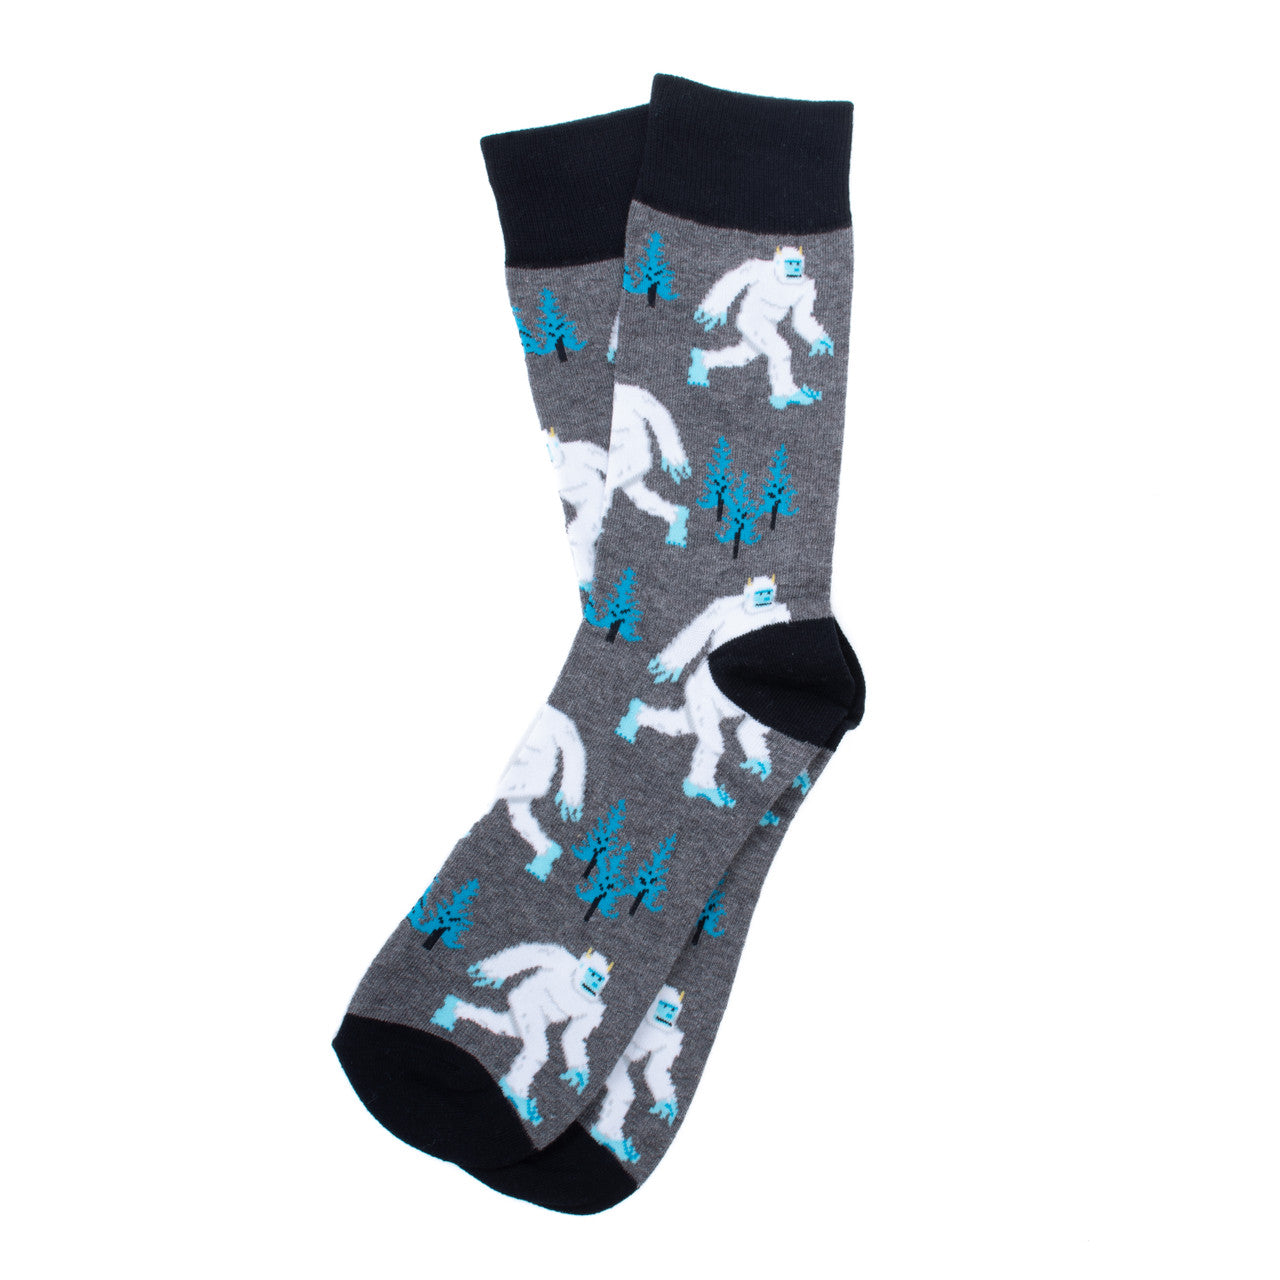 Selini New York - Socks Men's Yetis